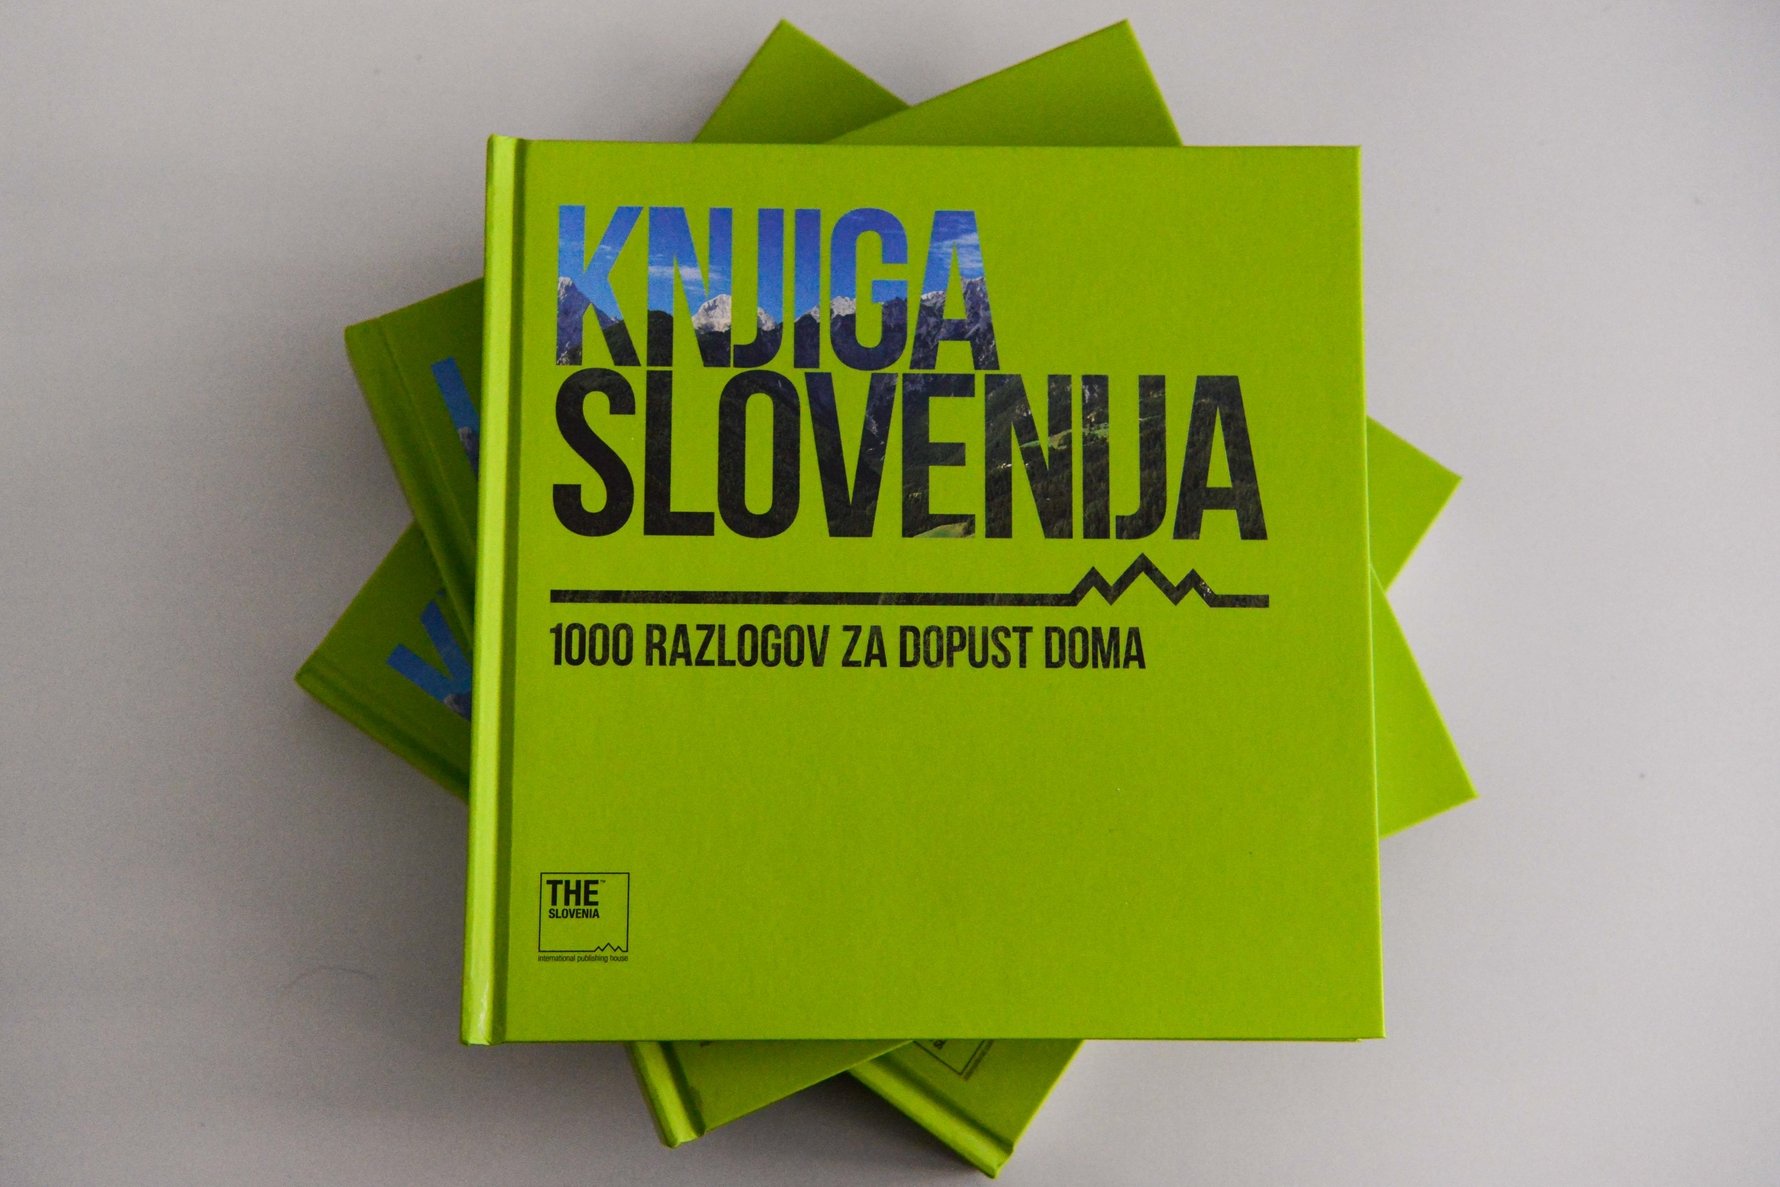 Knjiga Slovenija ostani doma